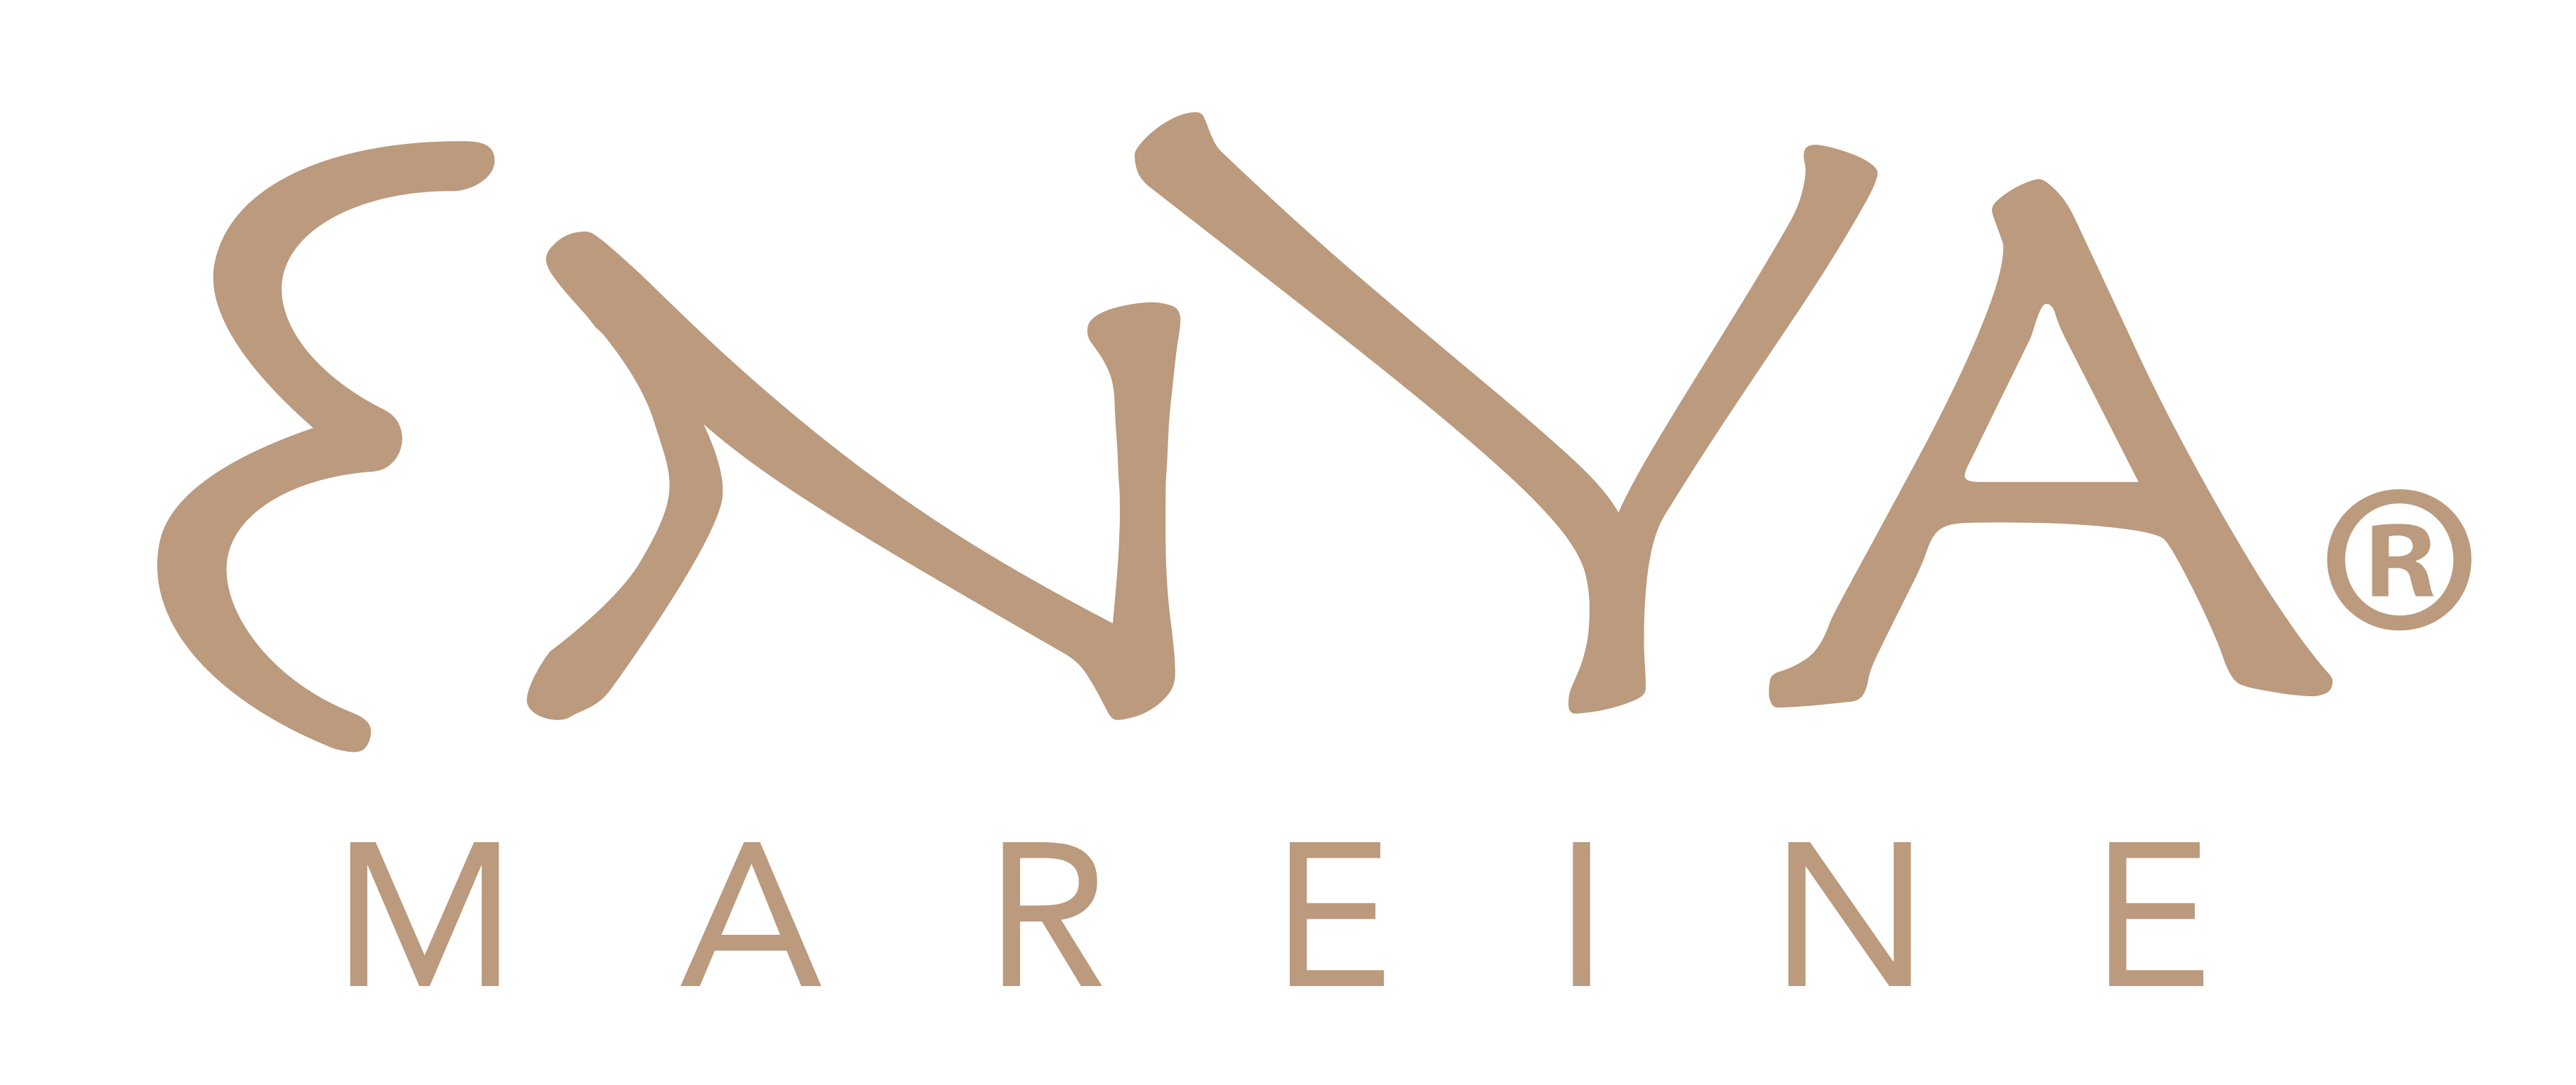 Enya Logo - Enya Mareine Wedding Blog